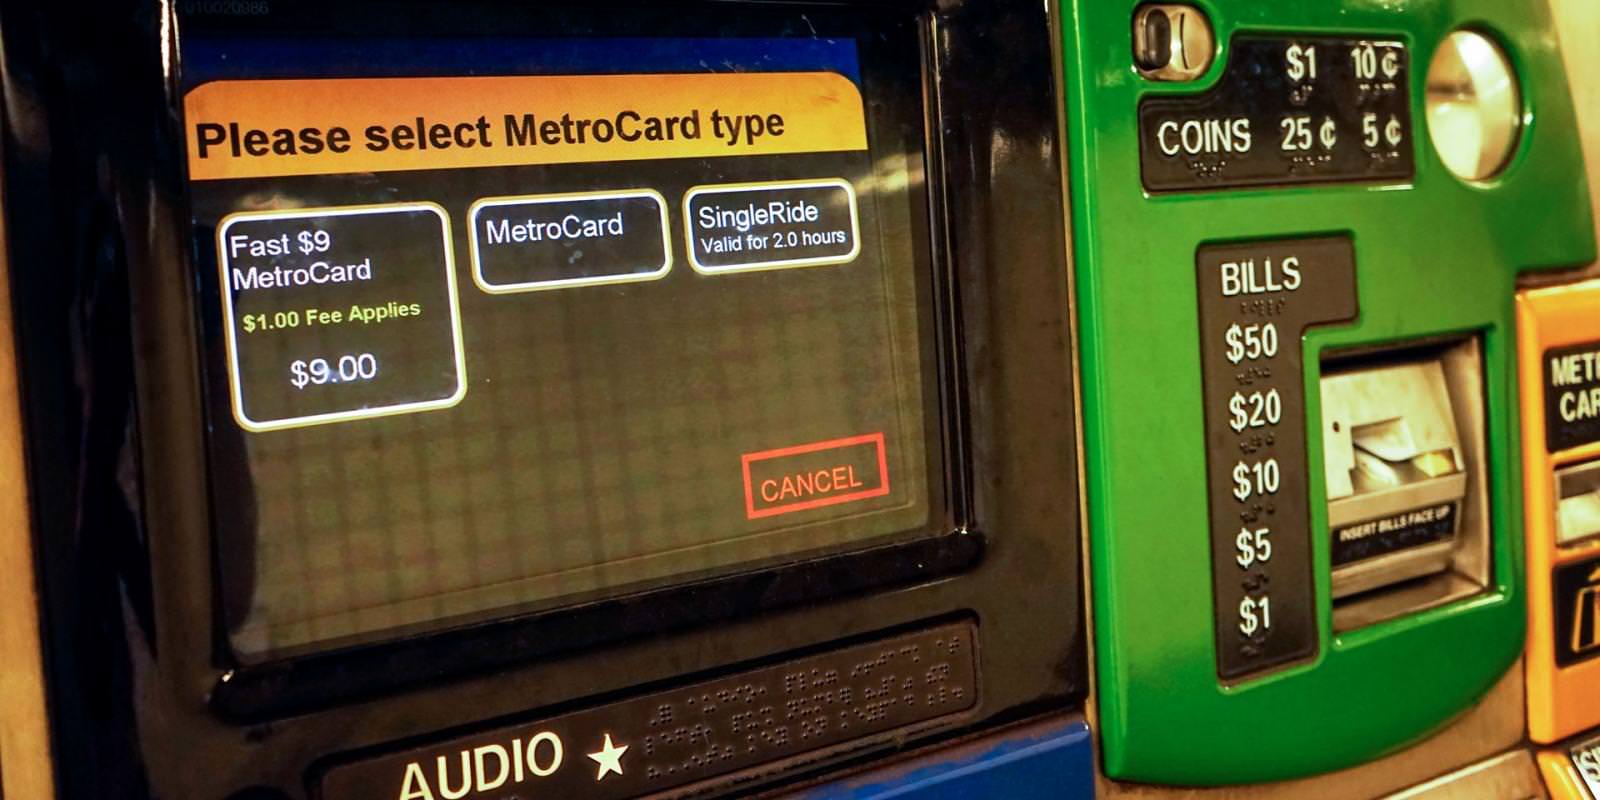 【チケット販売機】MetroCardの種類を選択